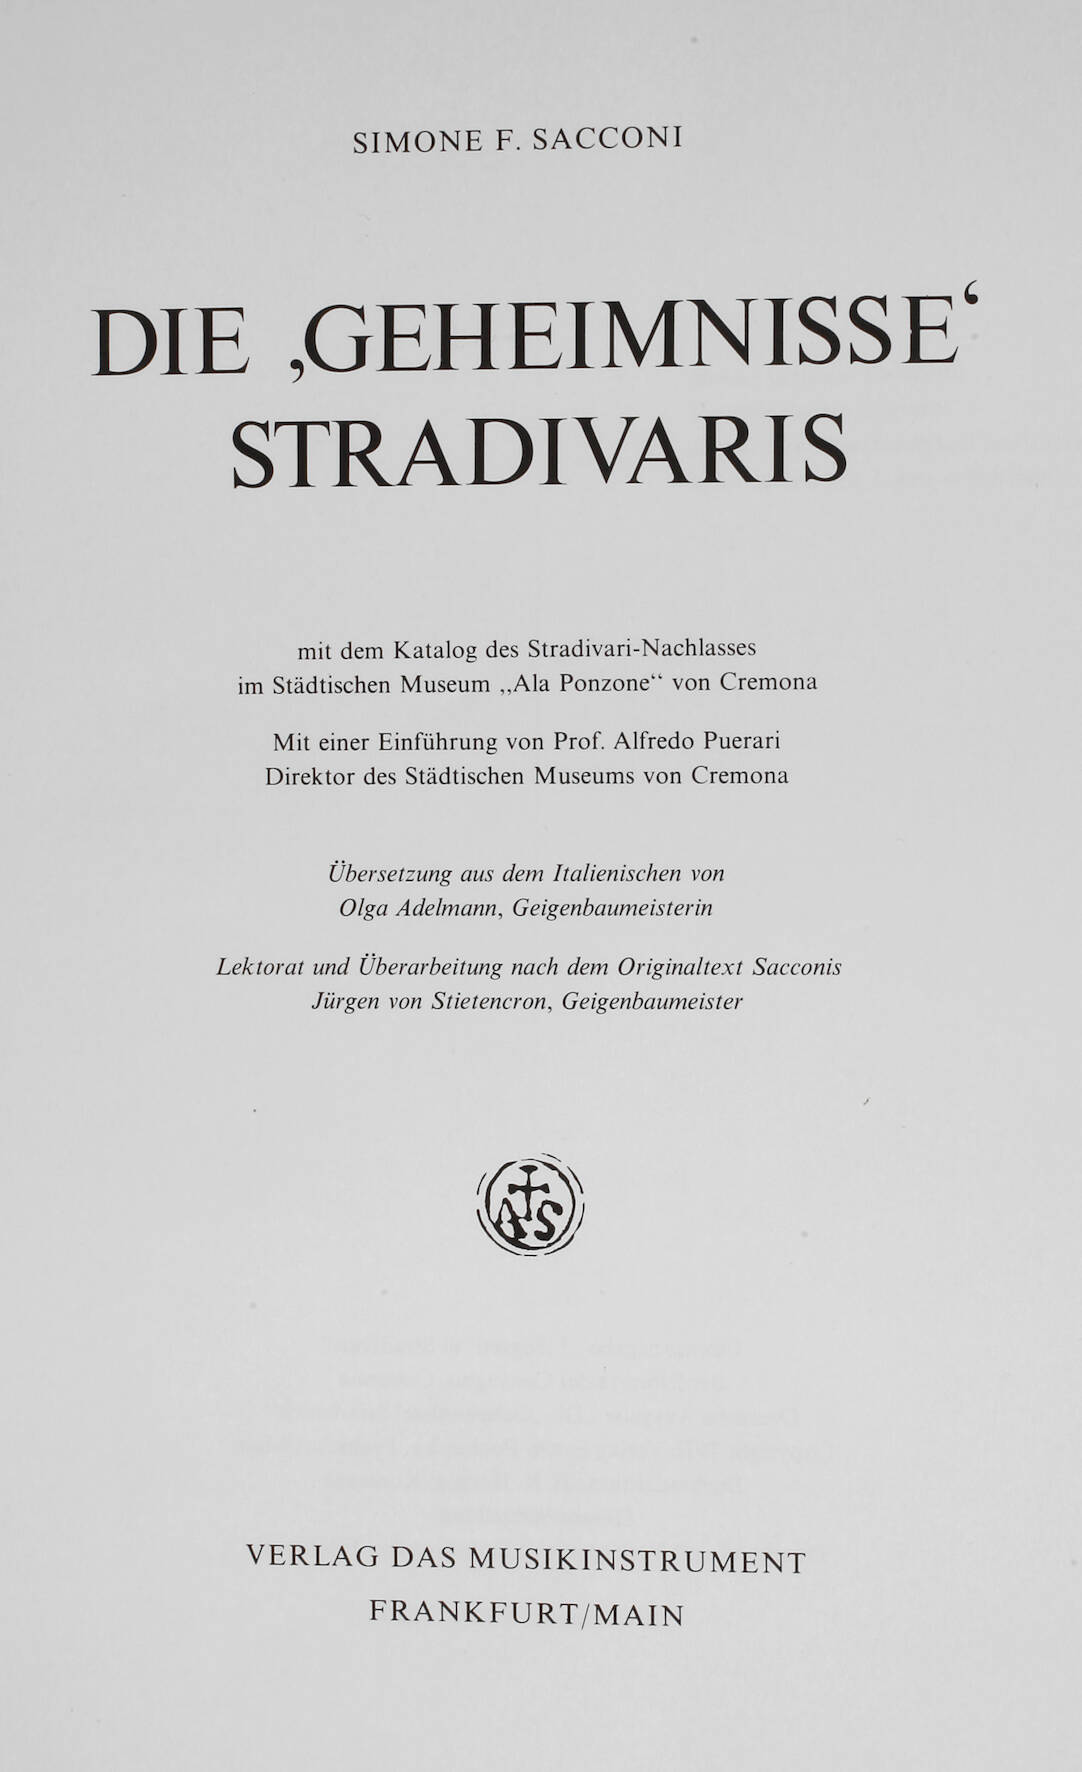 Simone F. Sacconi, Die Geheimnisse Stradivaris